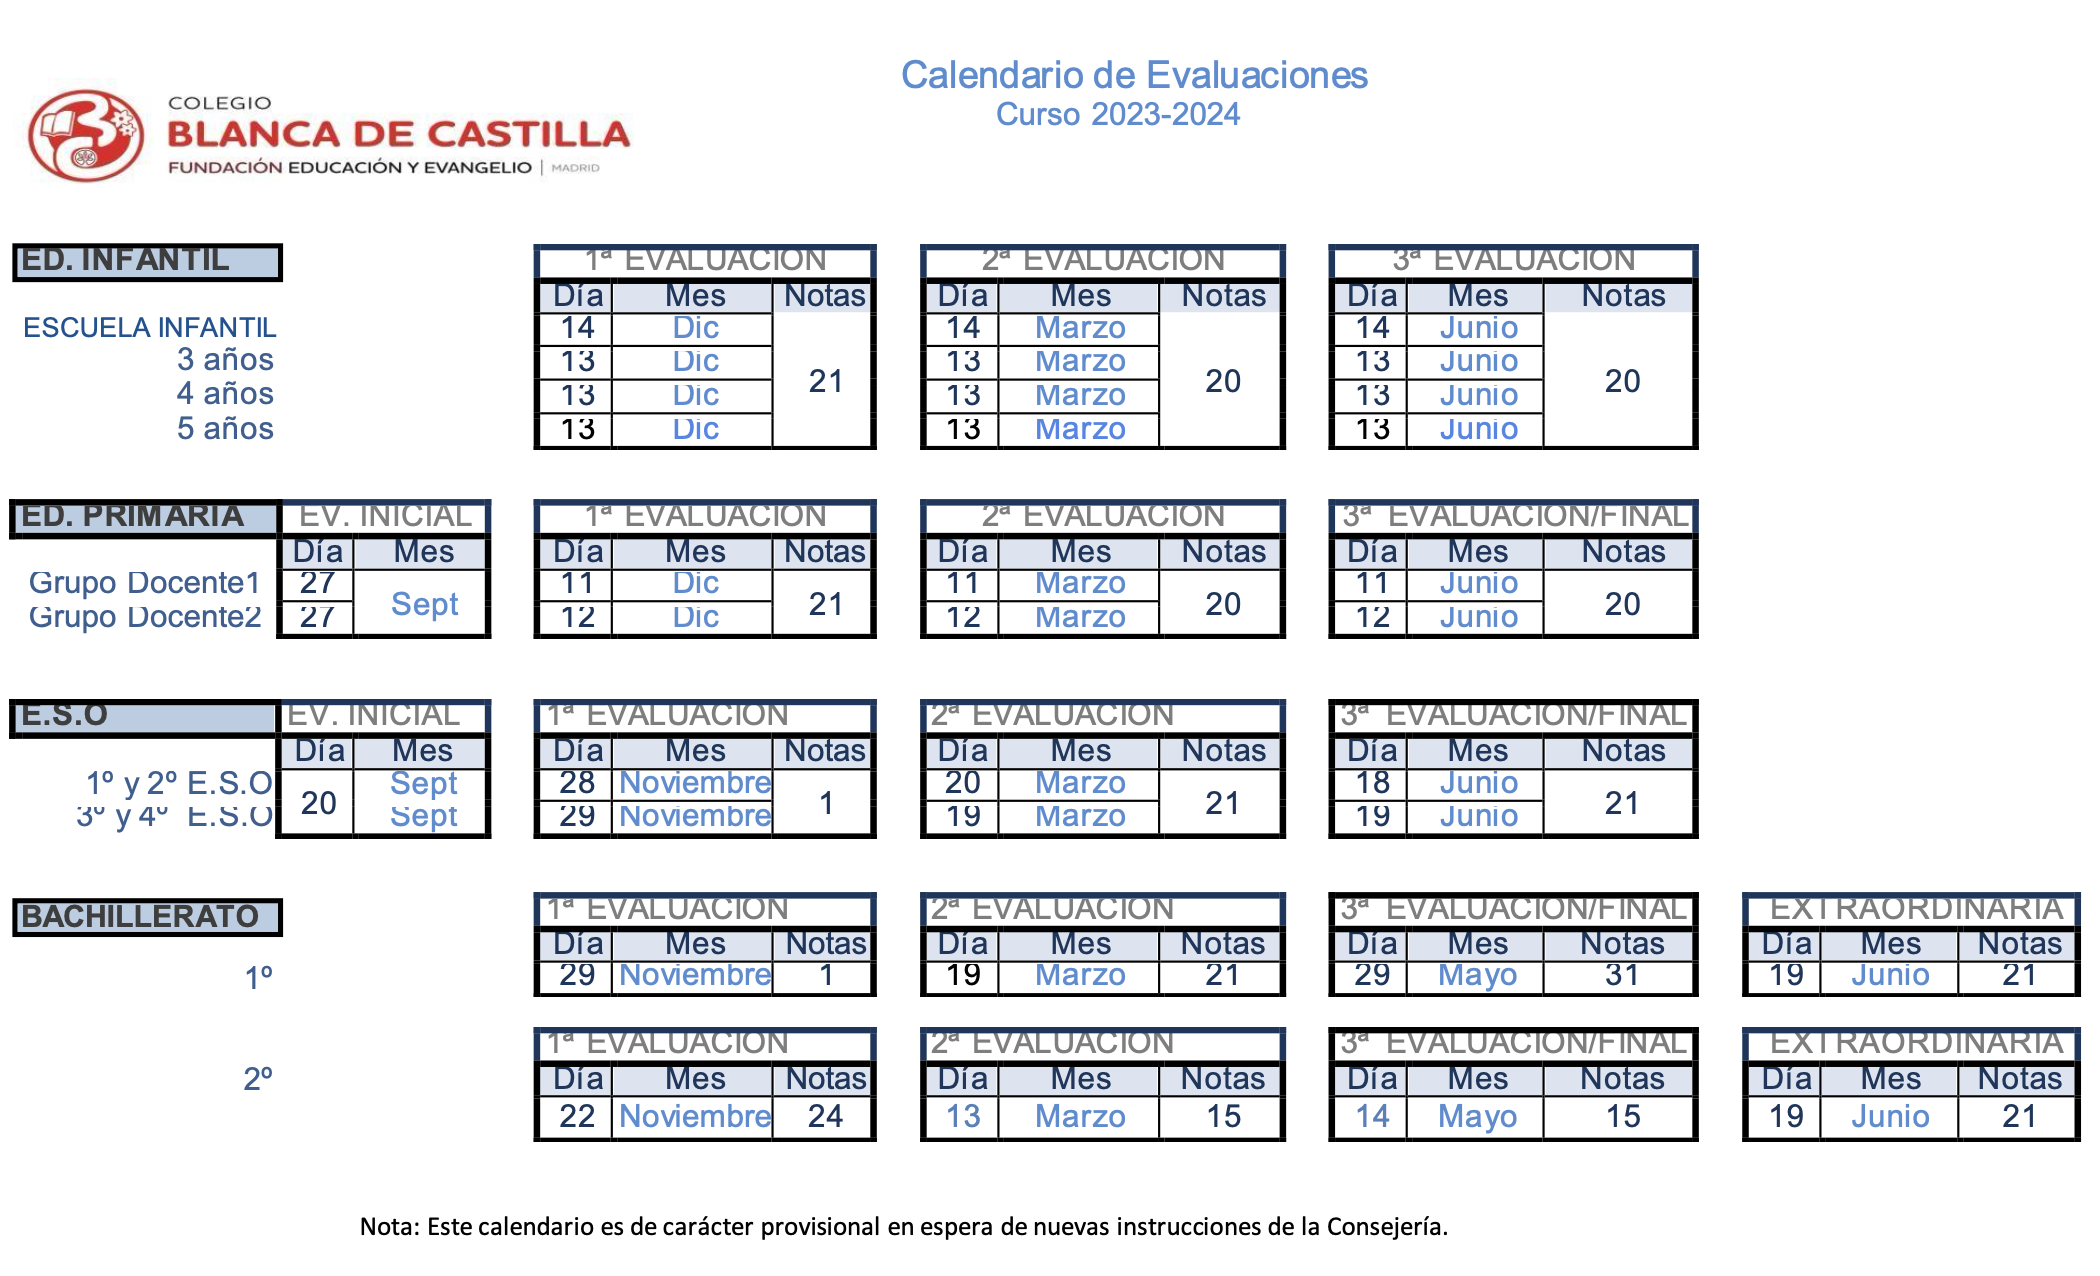 Cbc - Calendario Evaluaciones Curso 2023-24